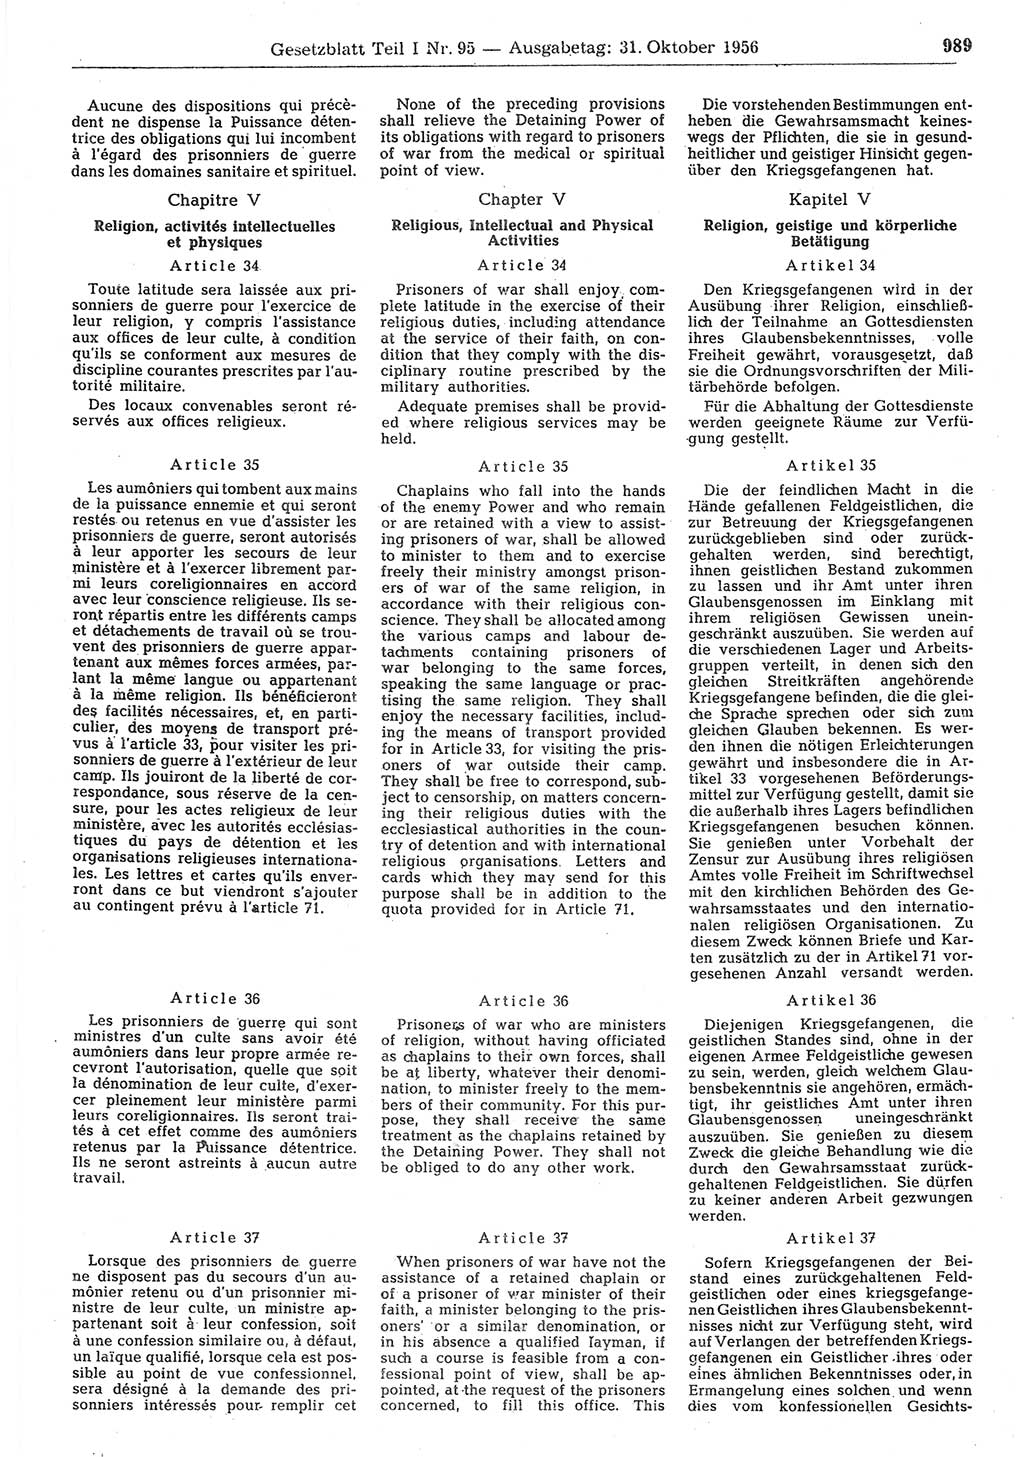 Gesetzblatt (GBl.) der Deutschen Demokratischen Republik (DDR) Teil Ⅰ 1956, Seite 989 (GBl. DDR Ⅰ 1956, S. 989)